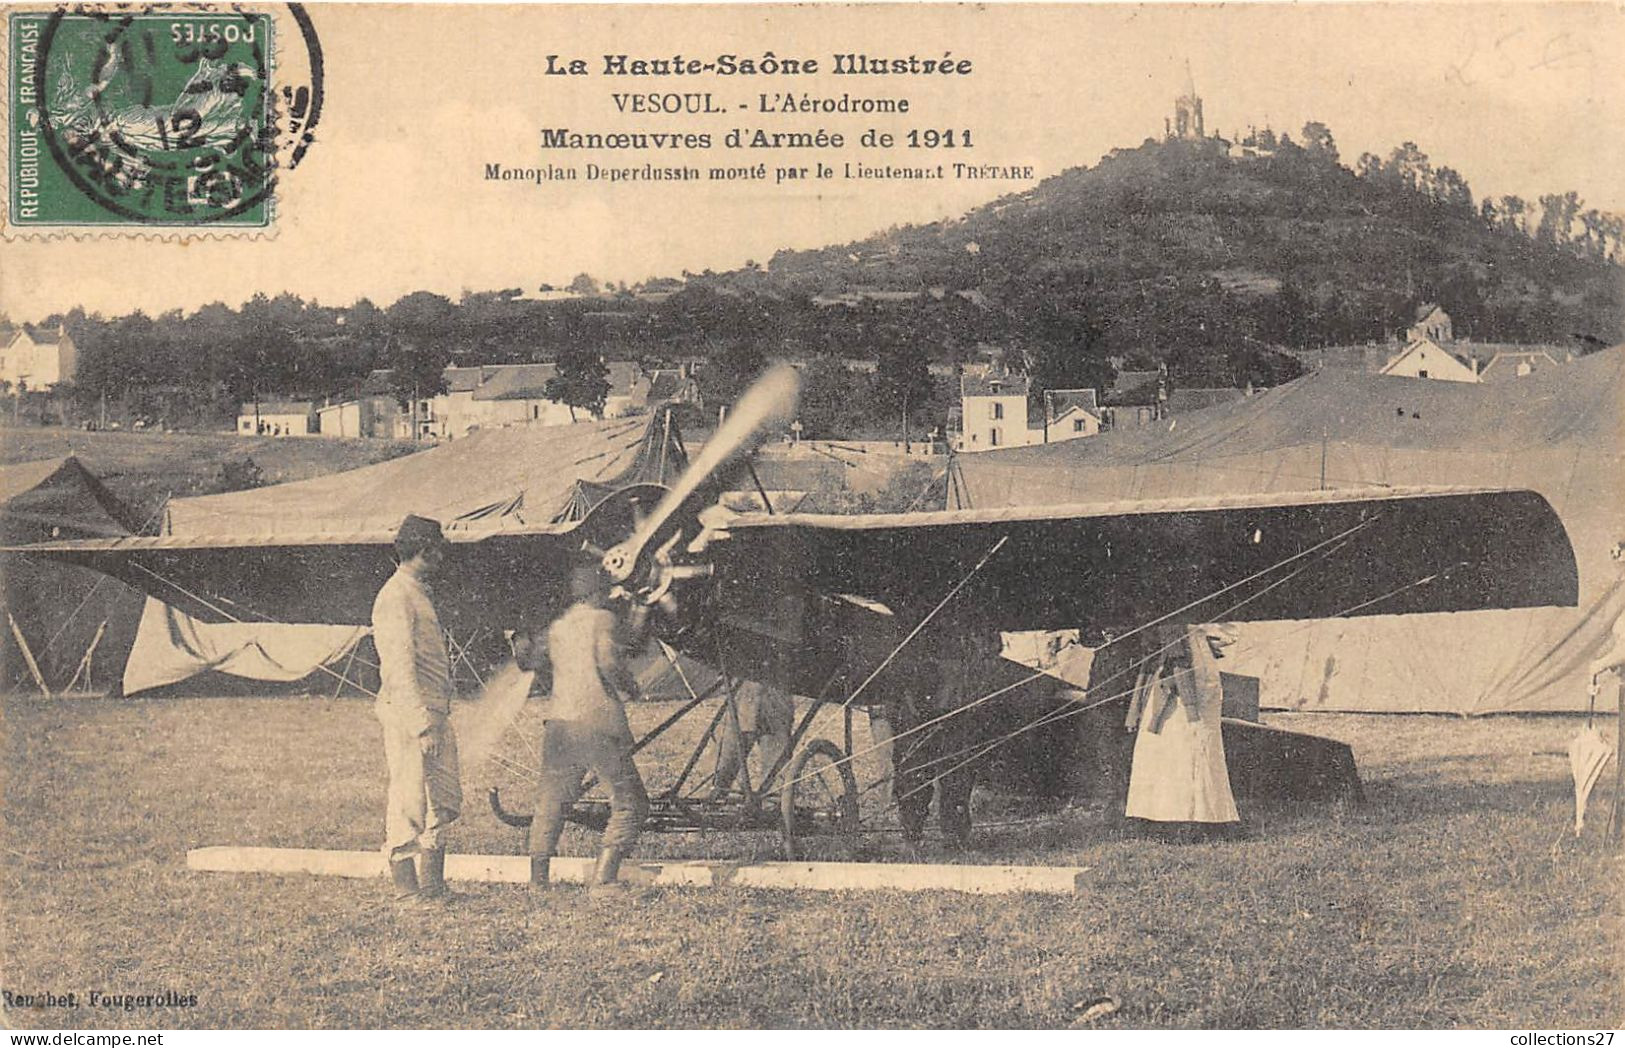 70-VESOUL- L'AERODROME- MANOEUVRES D'ARMEE DE 1911 MONOPLAN DEPERDUSSIN MONTE PAR LE LIEUTENANT TRETARE - Vesoul